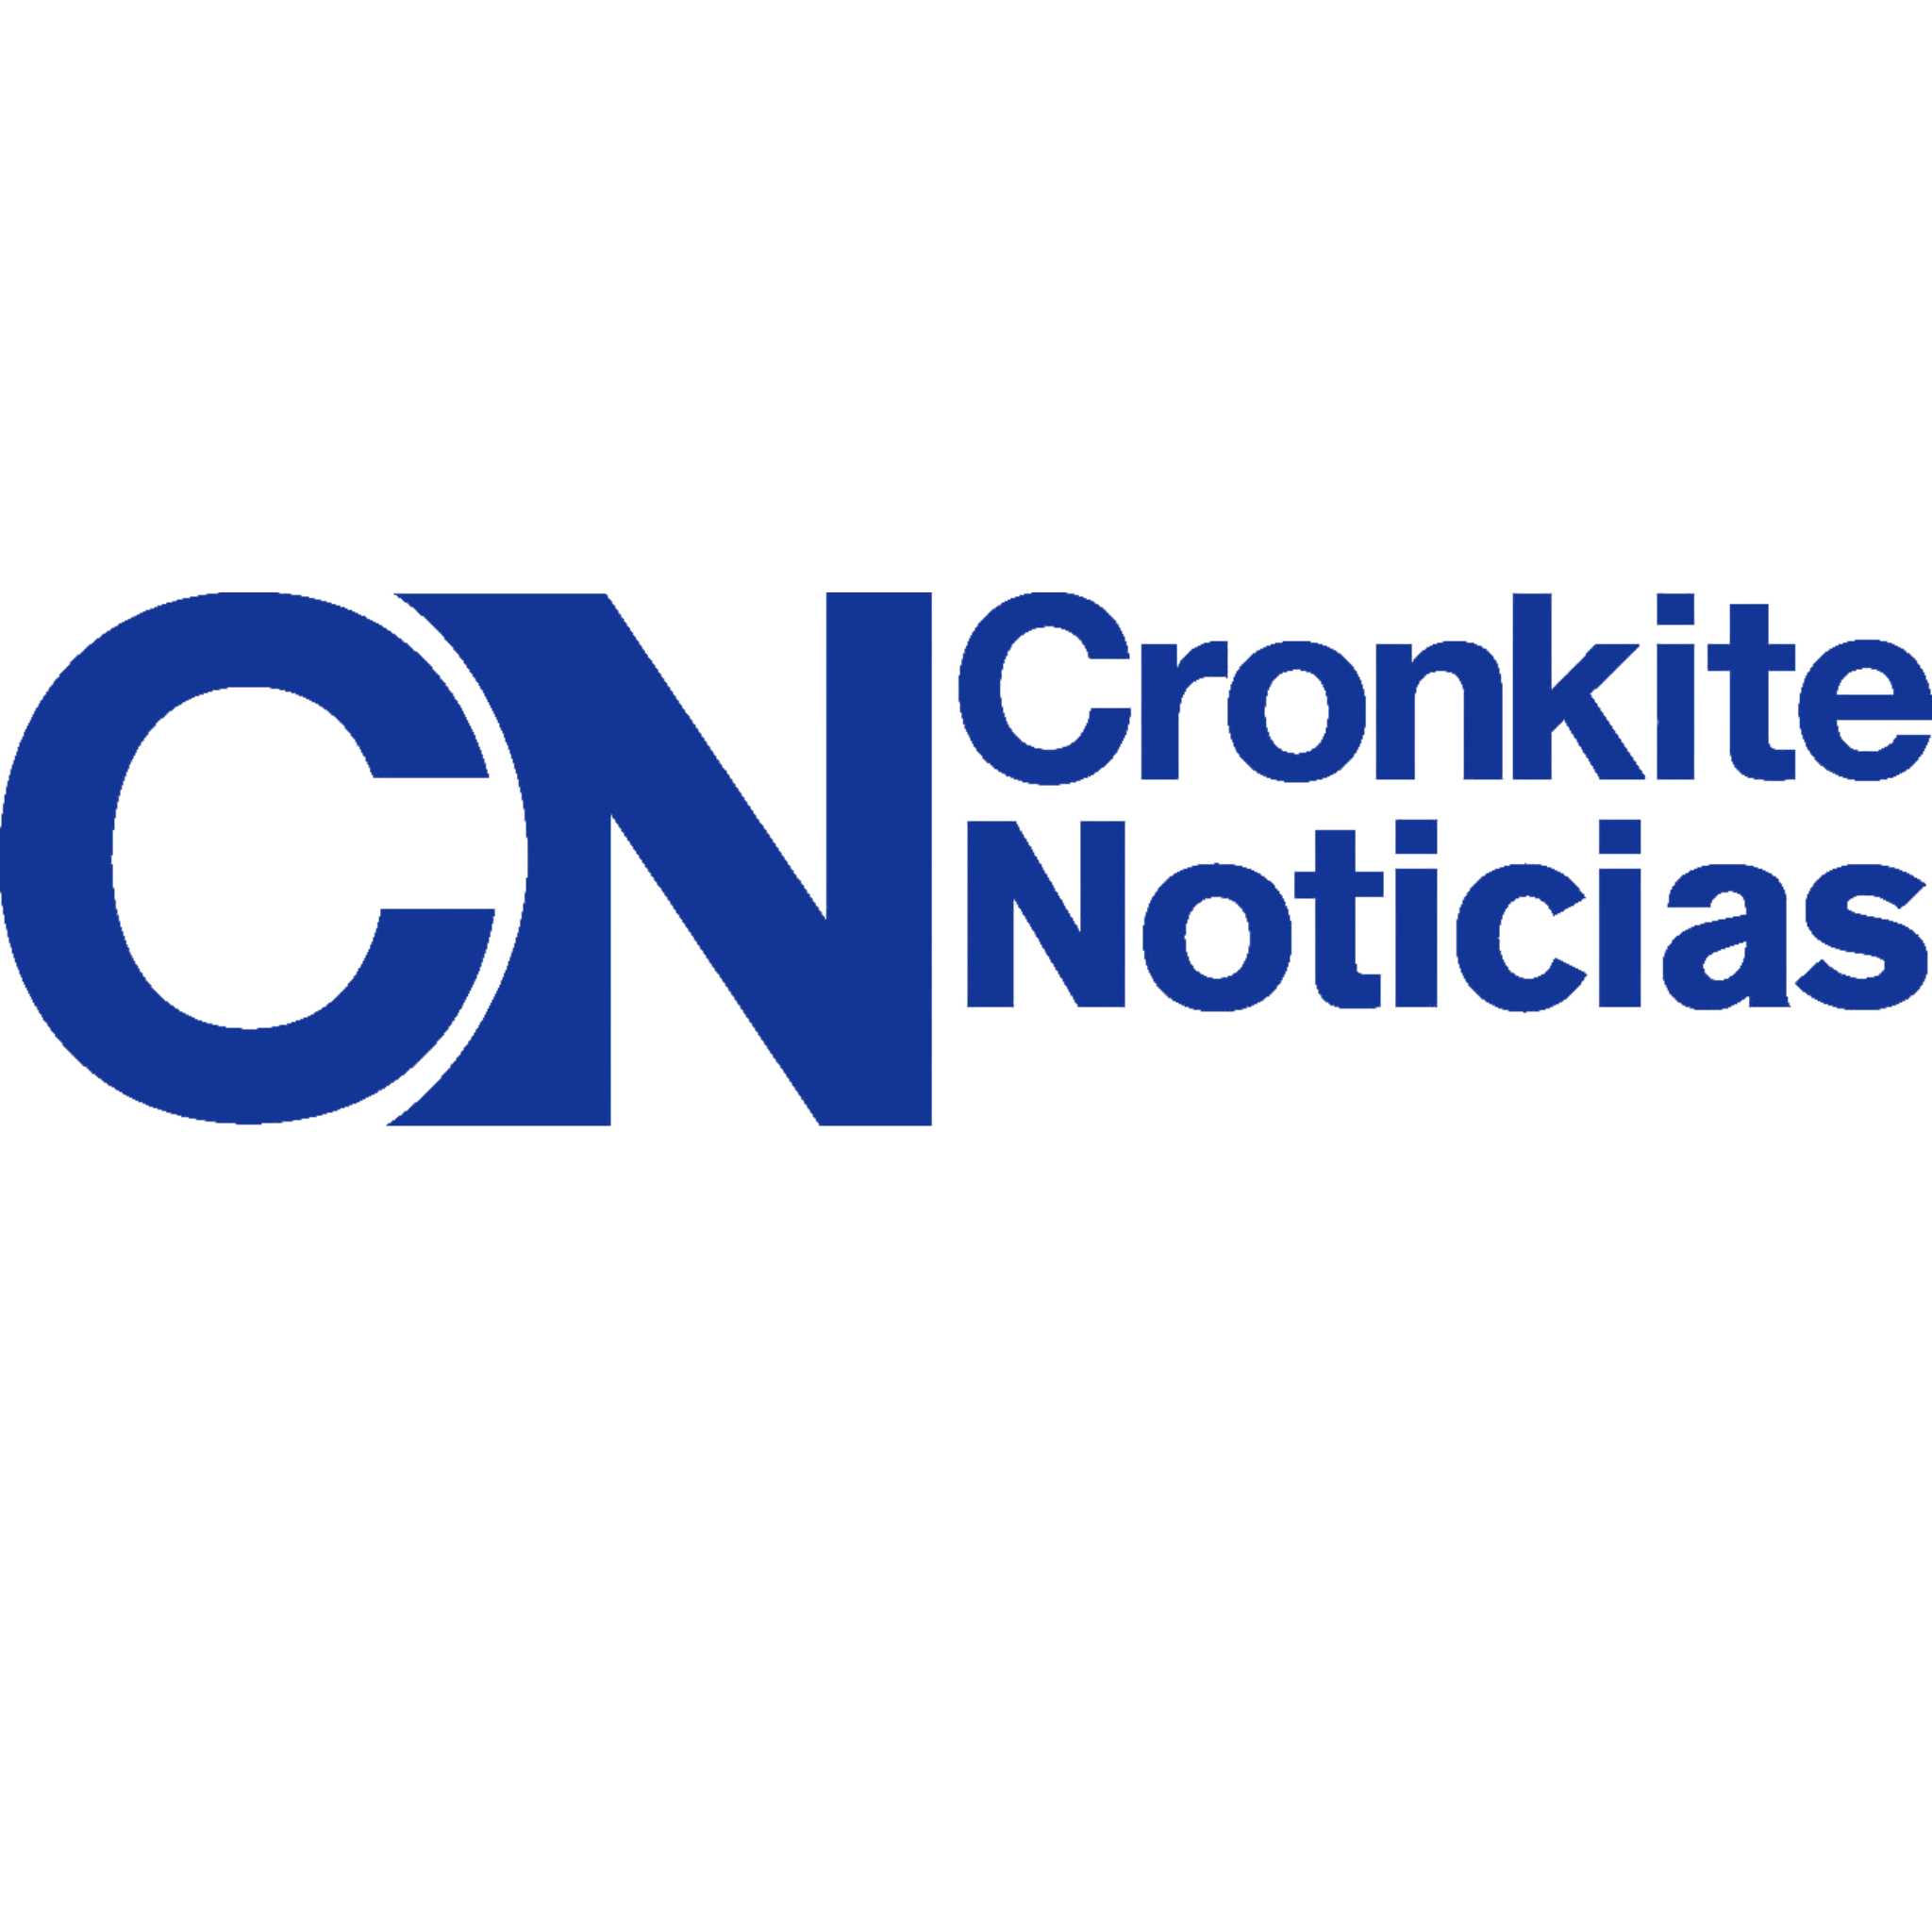 Cronkite News